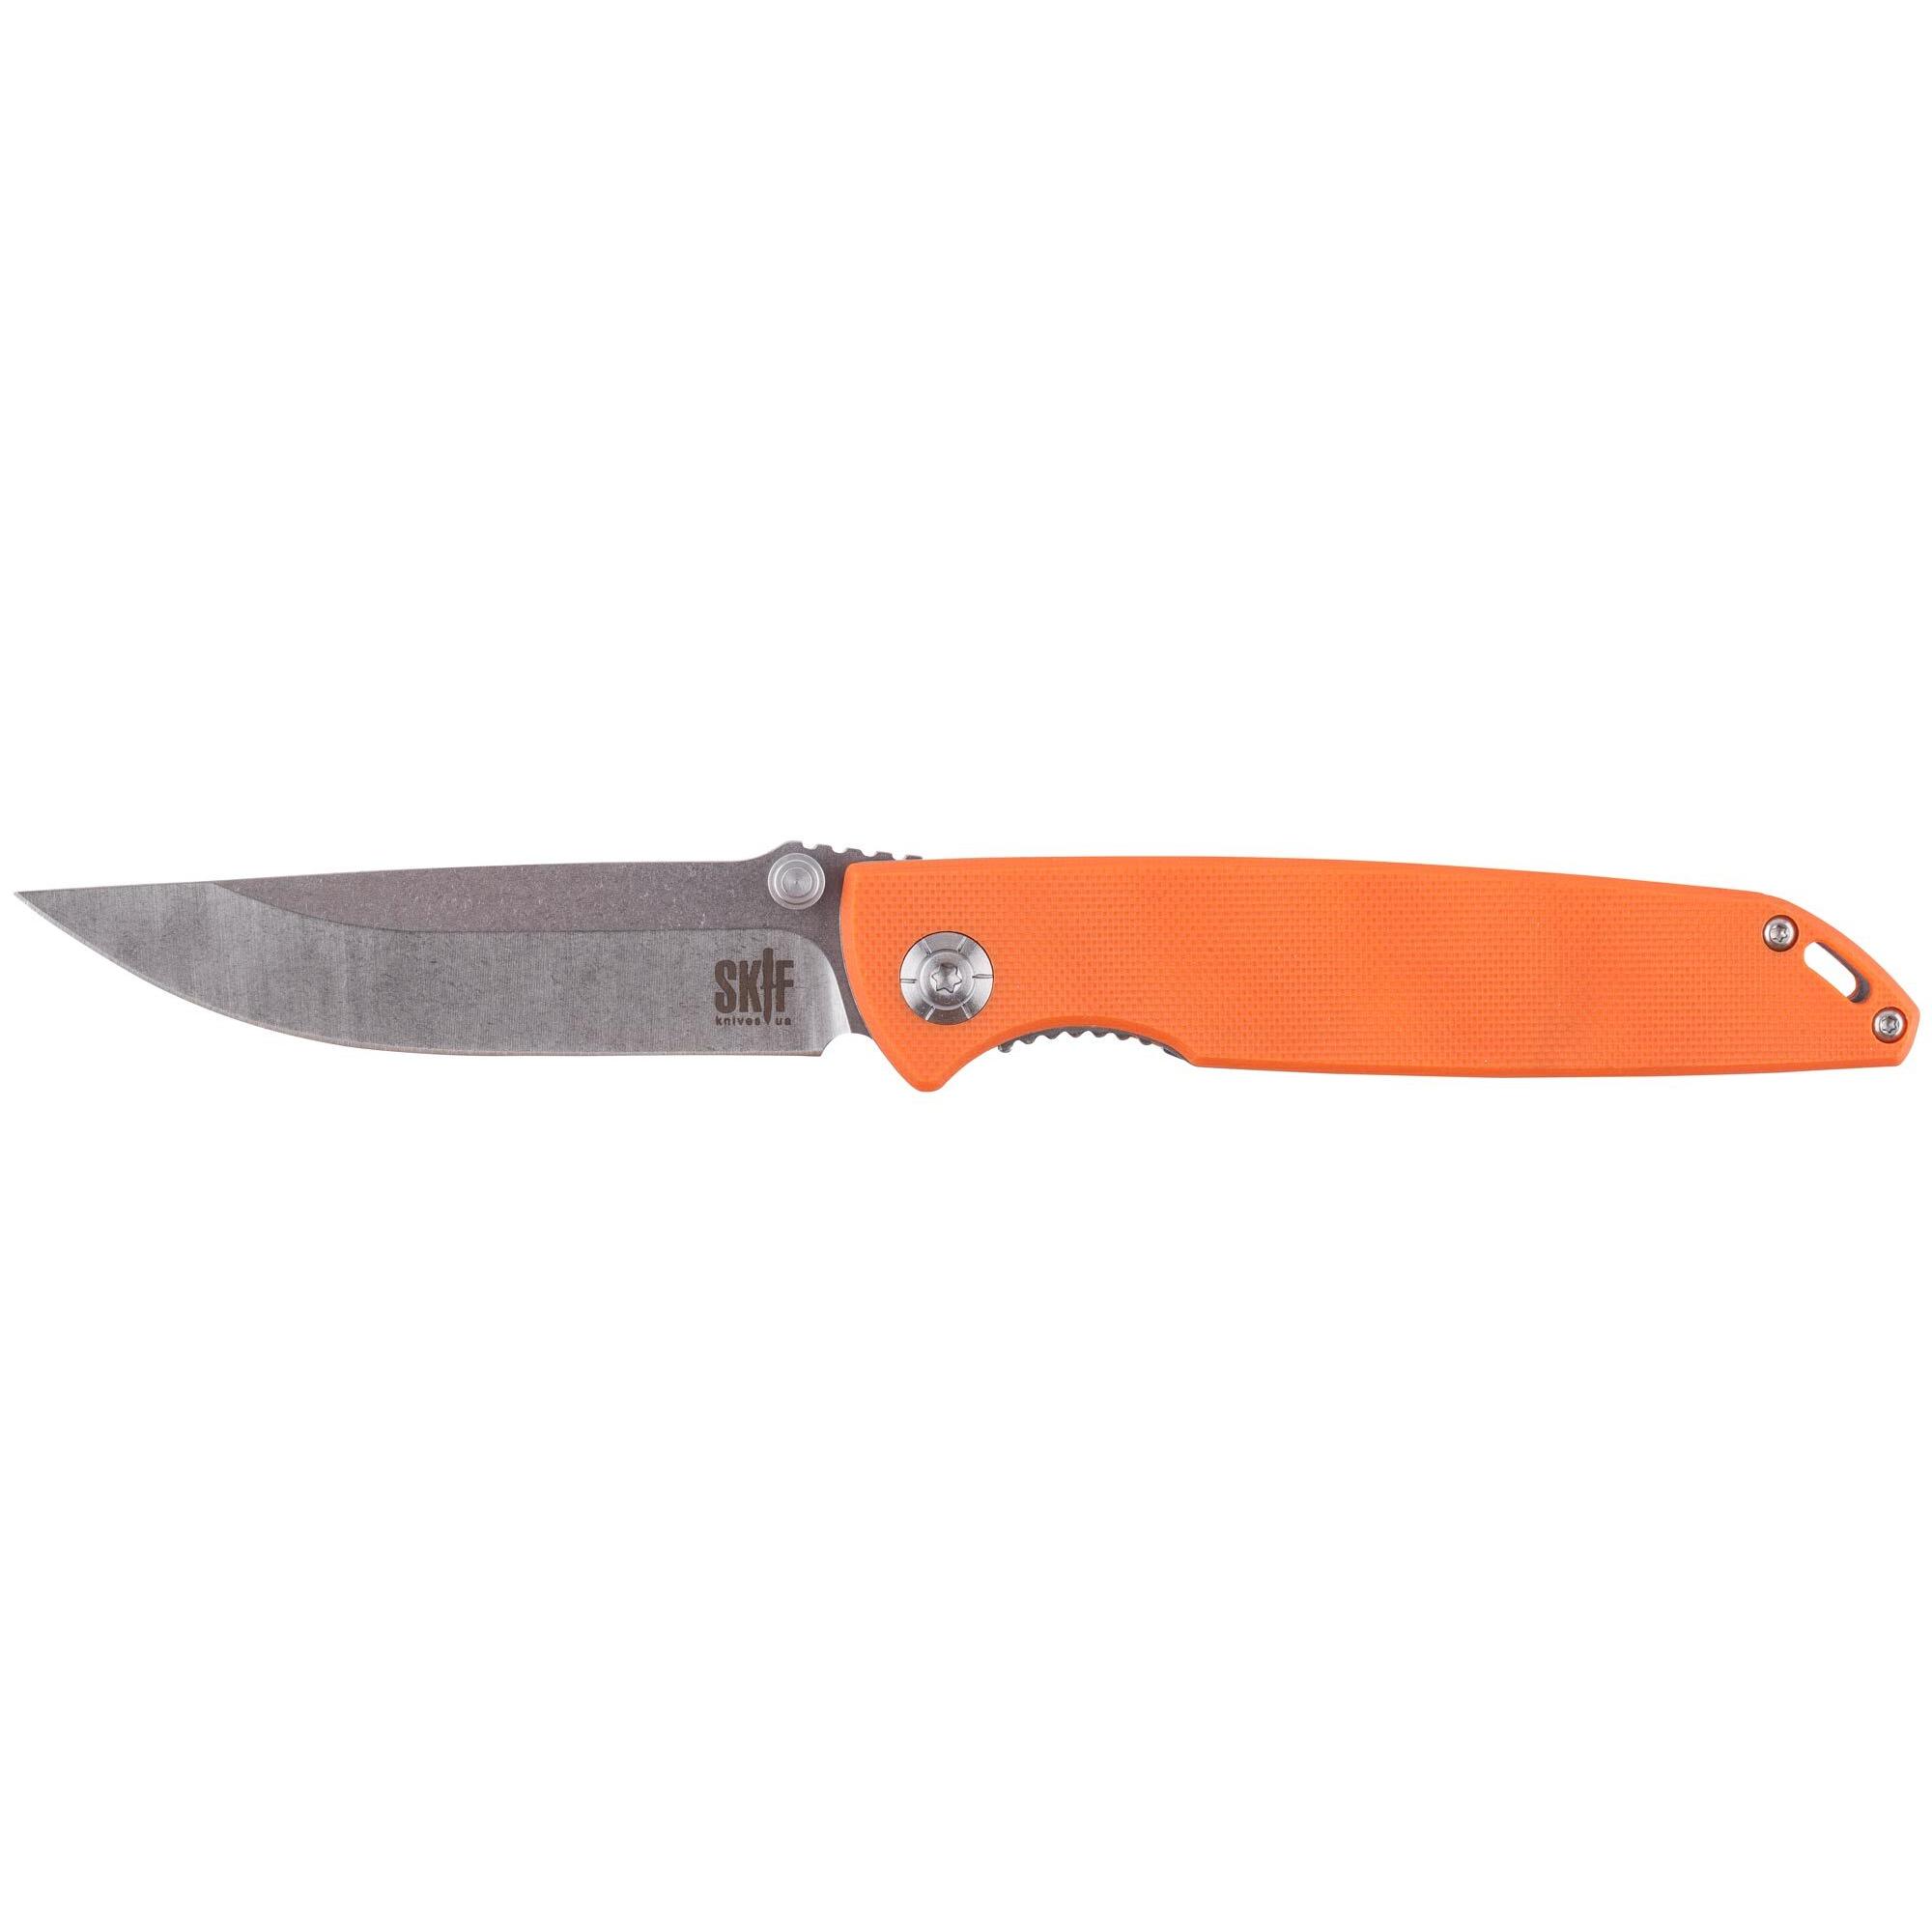 Нож Skif Stylus Orange IS-009OR 1765.02.33